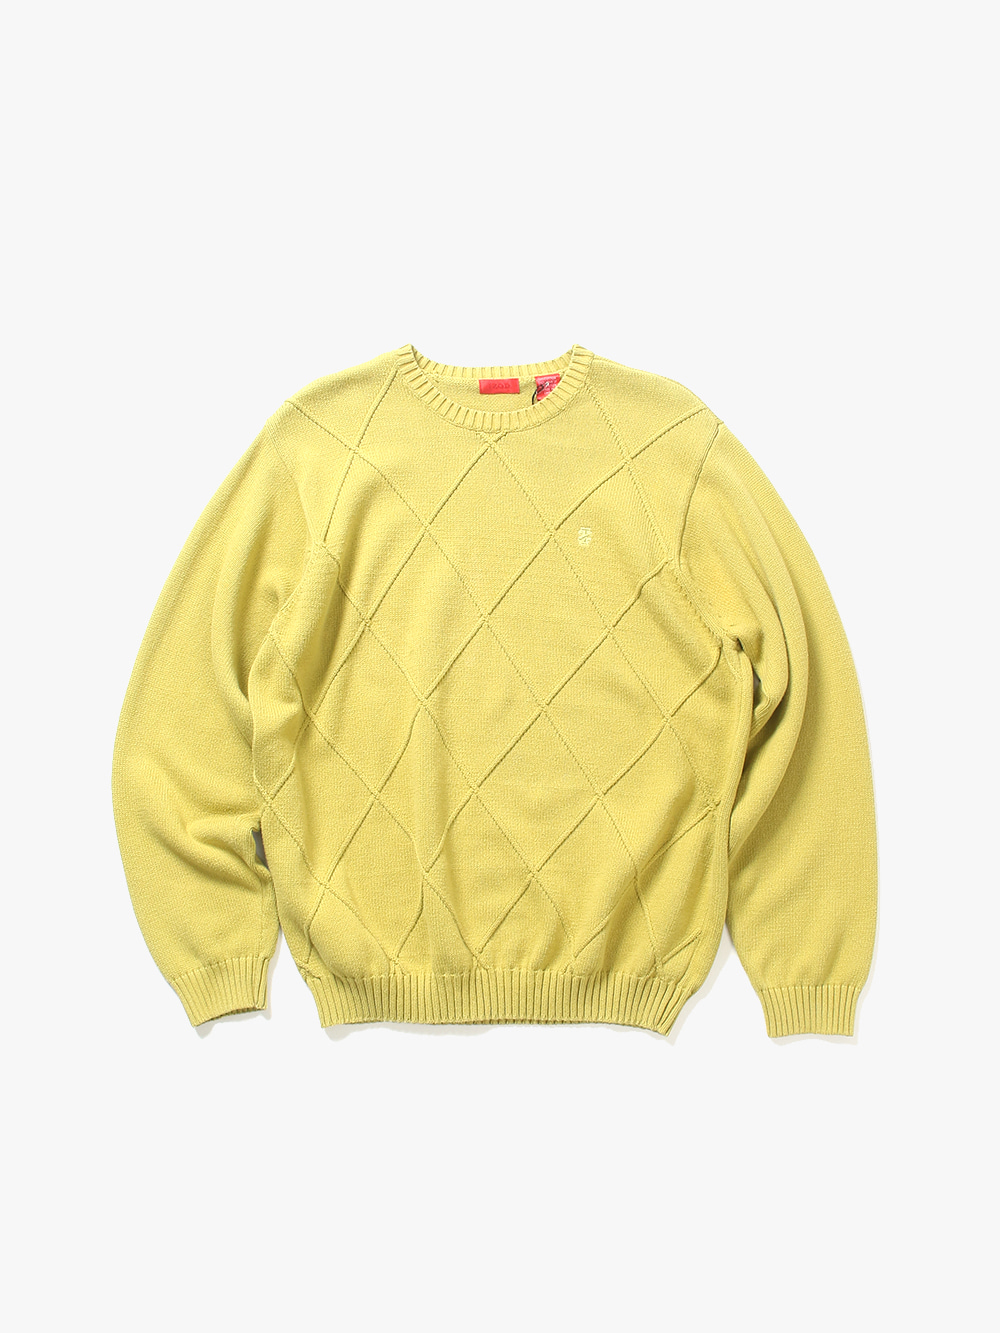 [ L ] Izod Sweater (6464)